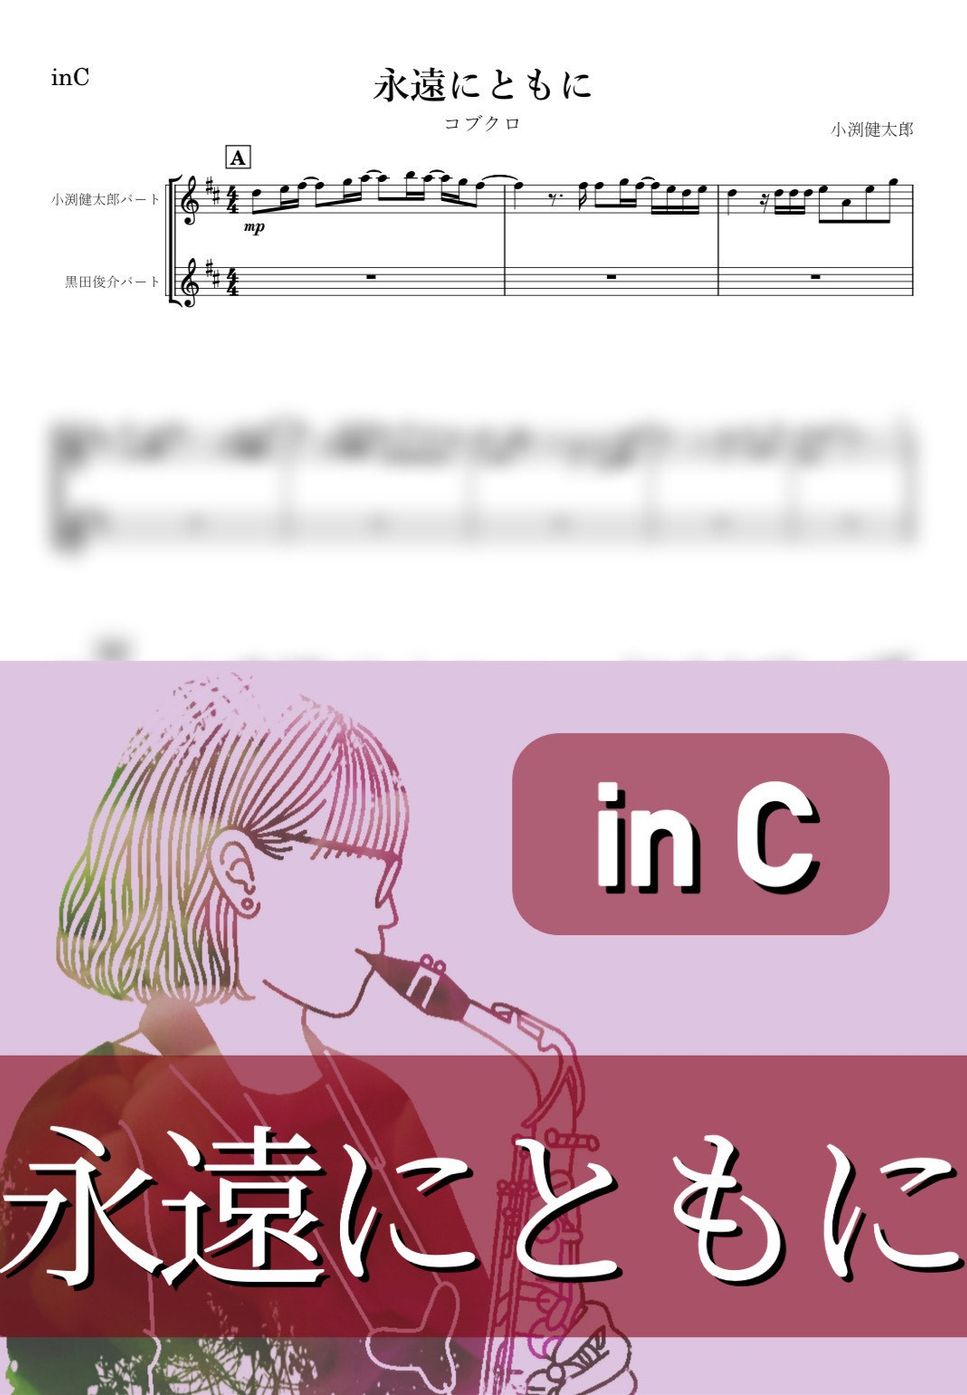 コブクロ - 永遠にともに (C) by kanamusic